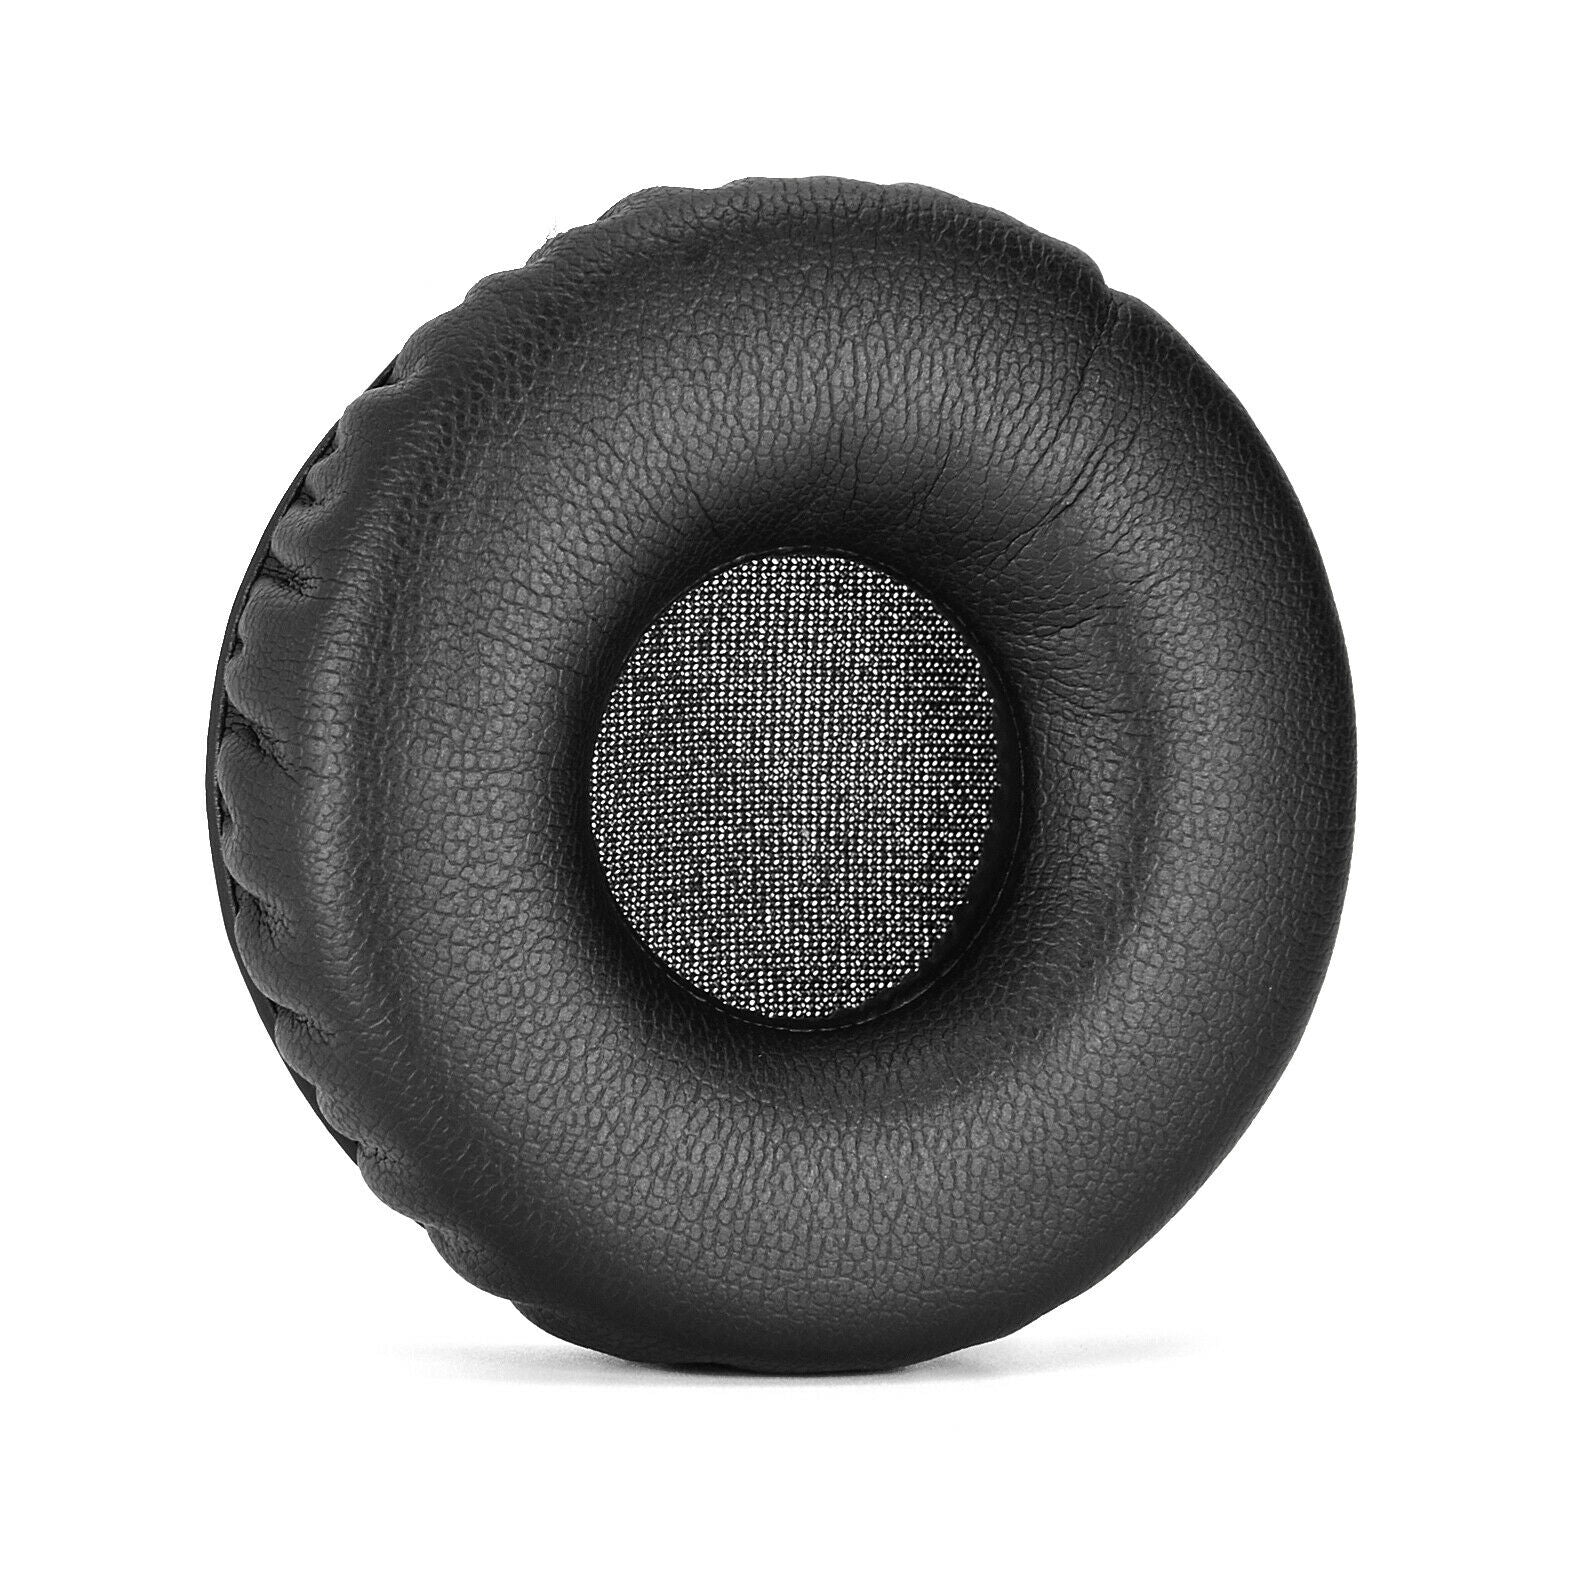 Ear Pads Cushion Case For Plantronics BLACKWIRE C510 C520 C710 C720 Headphones